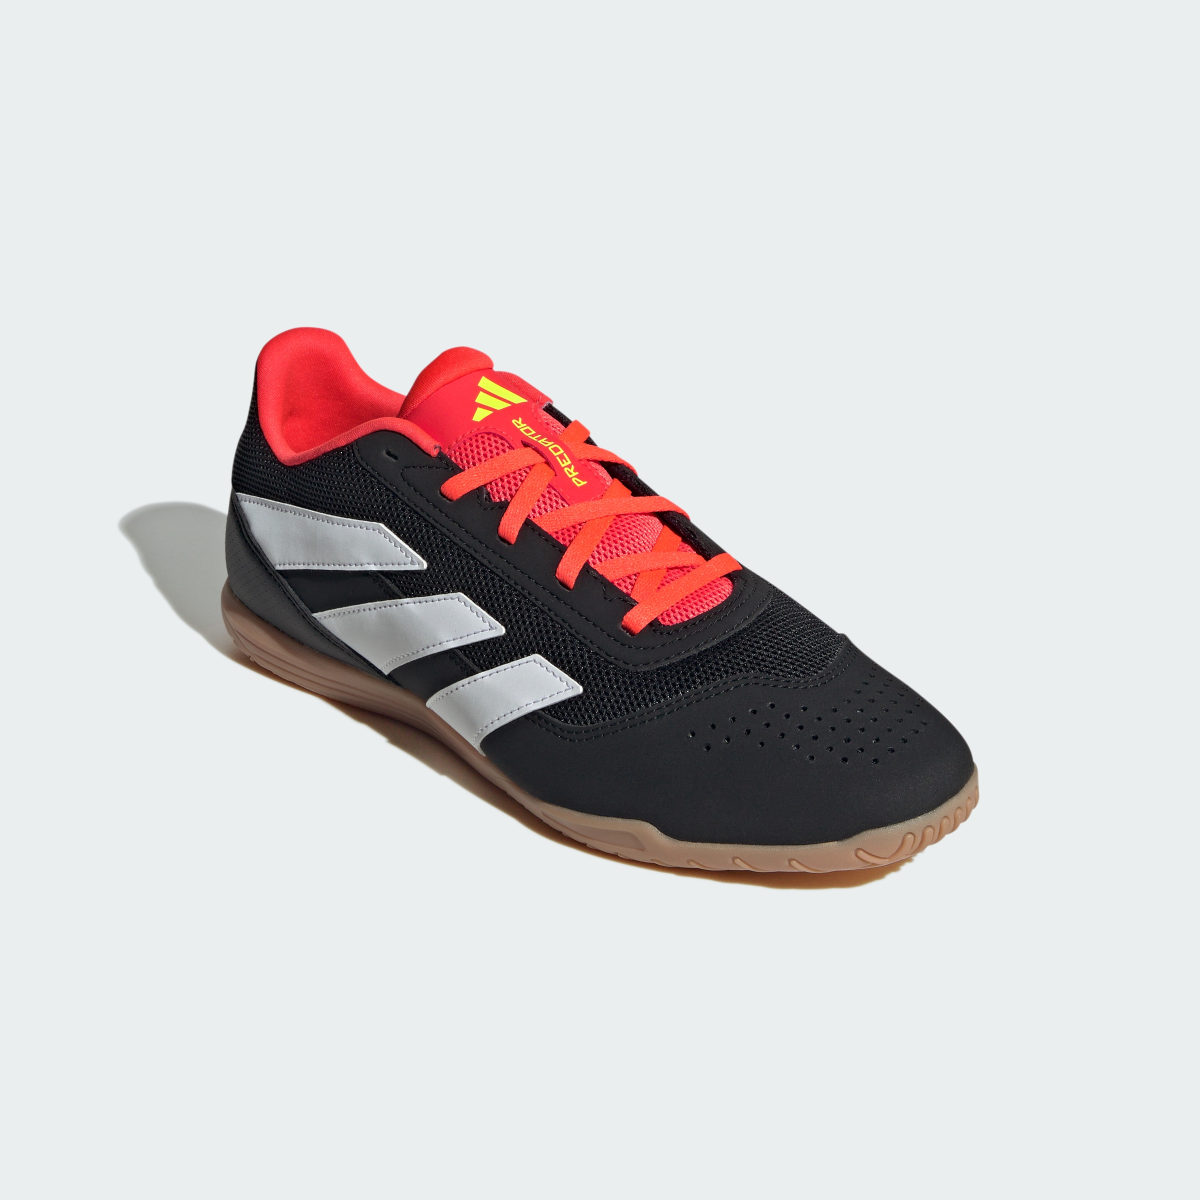 Adidas Predator Club Indoor Sala Football Boots. 5